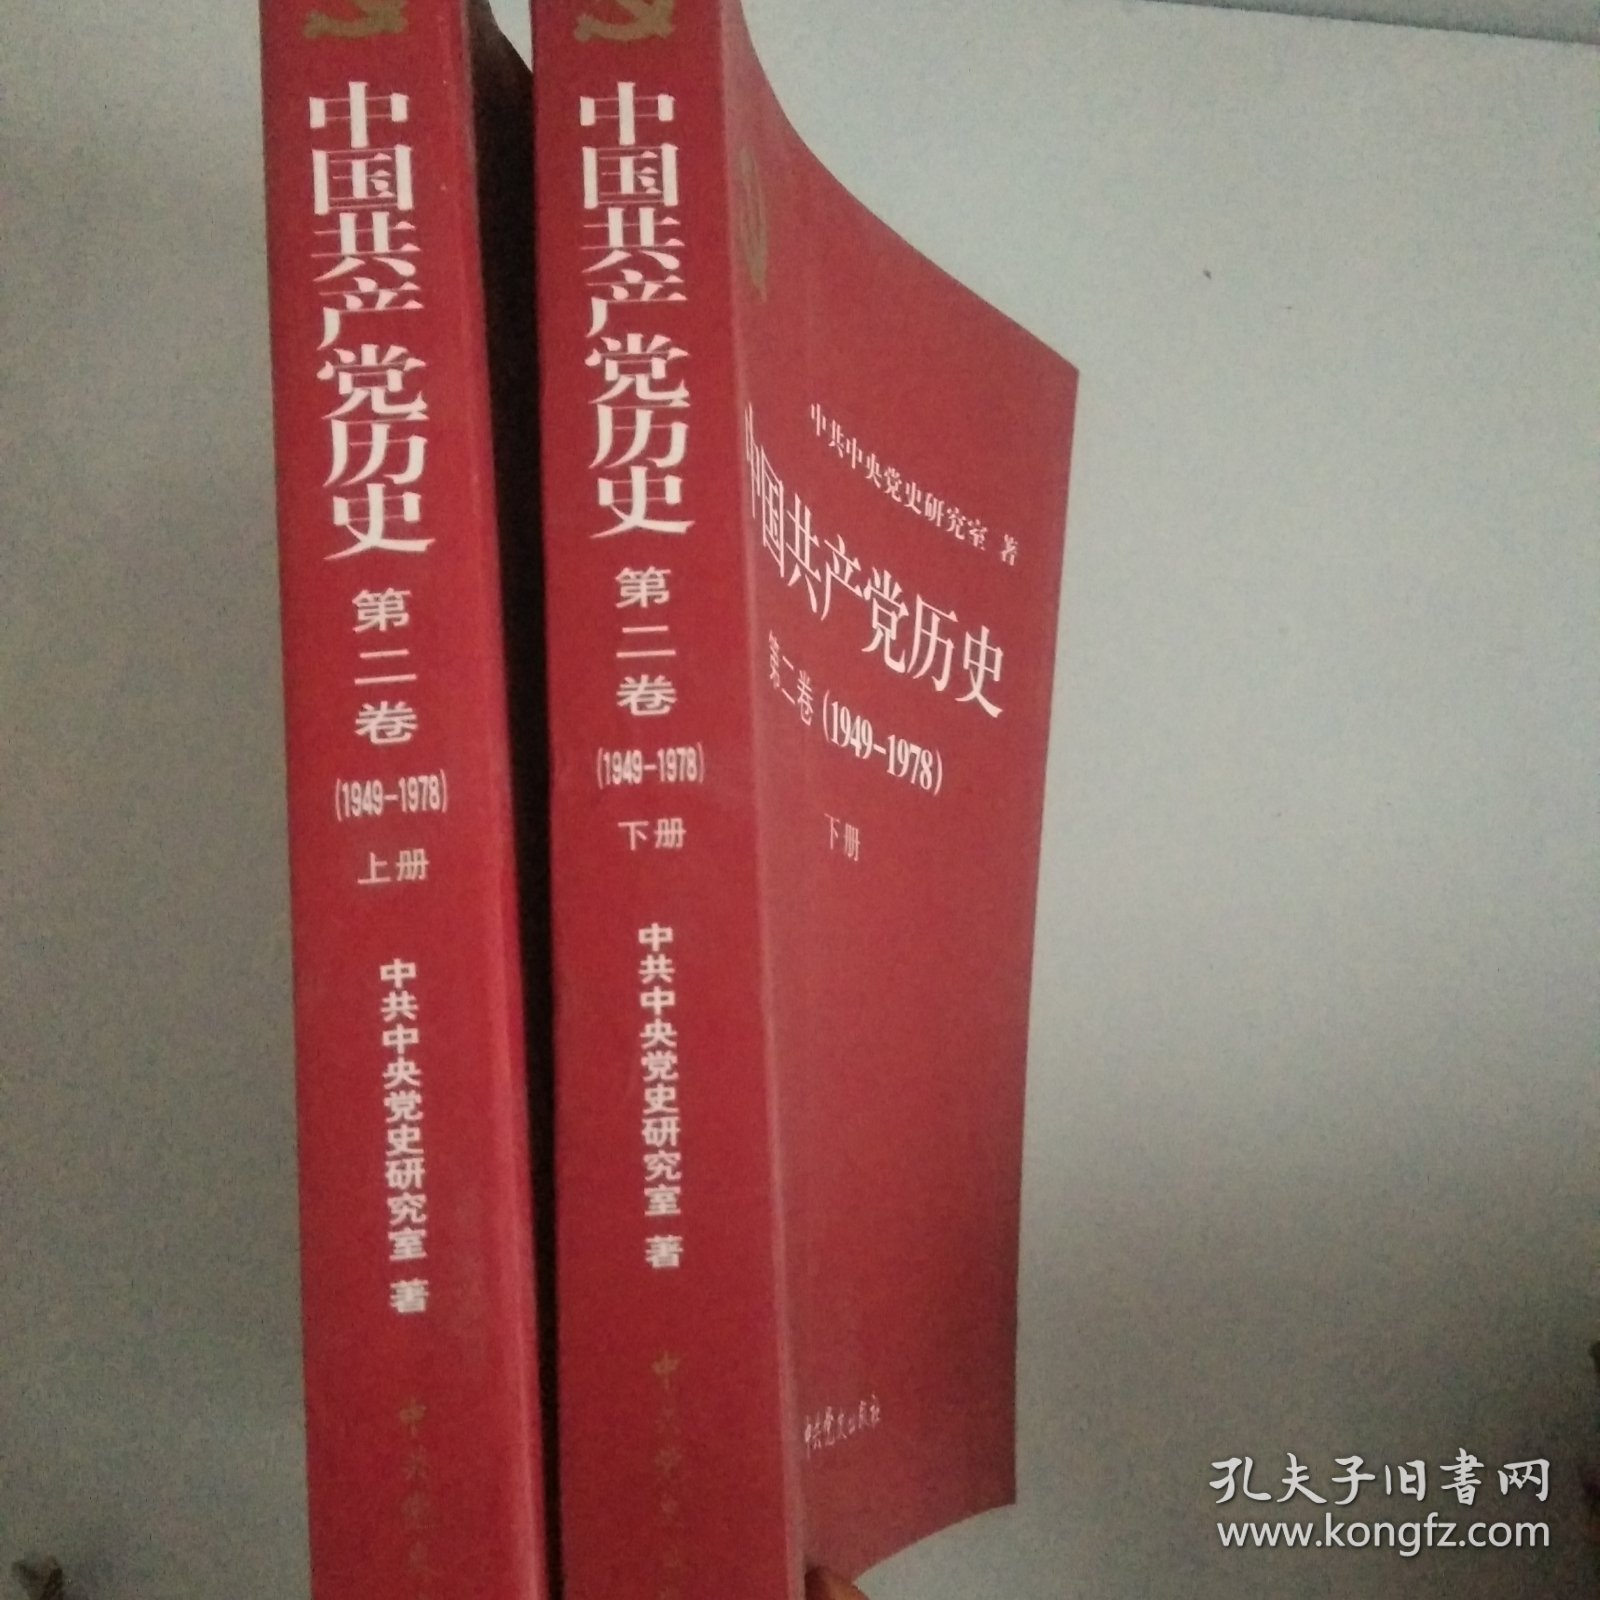 中国共产党历史（第二卷1949－1978)上下册